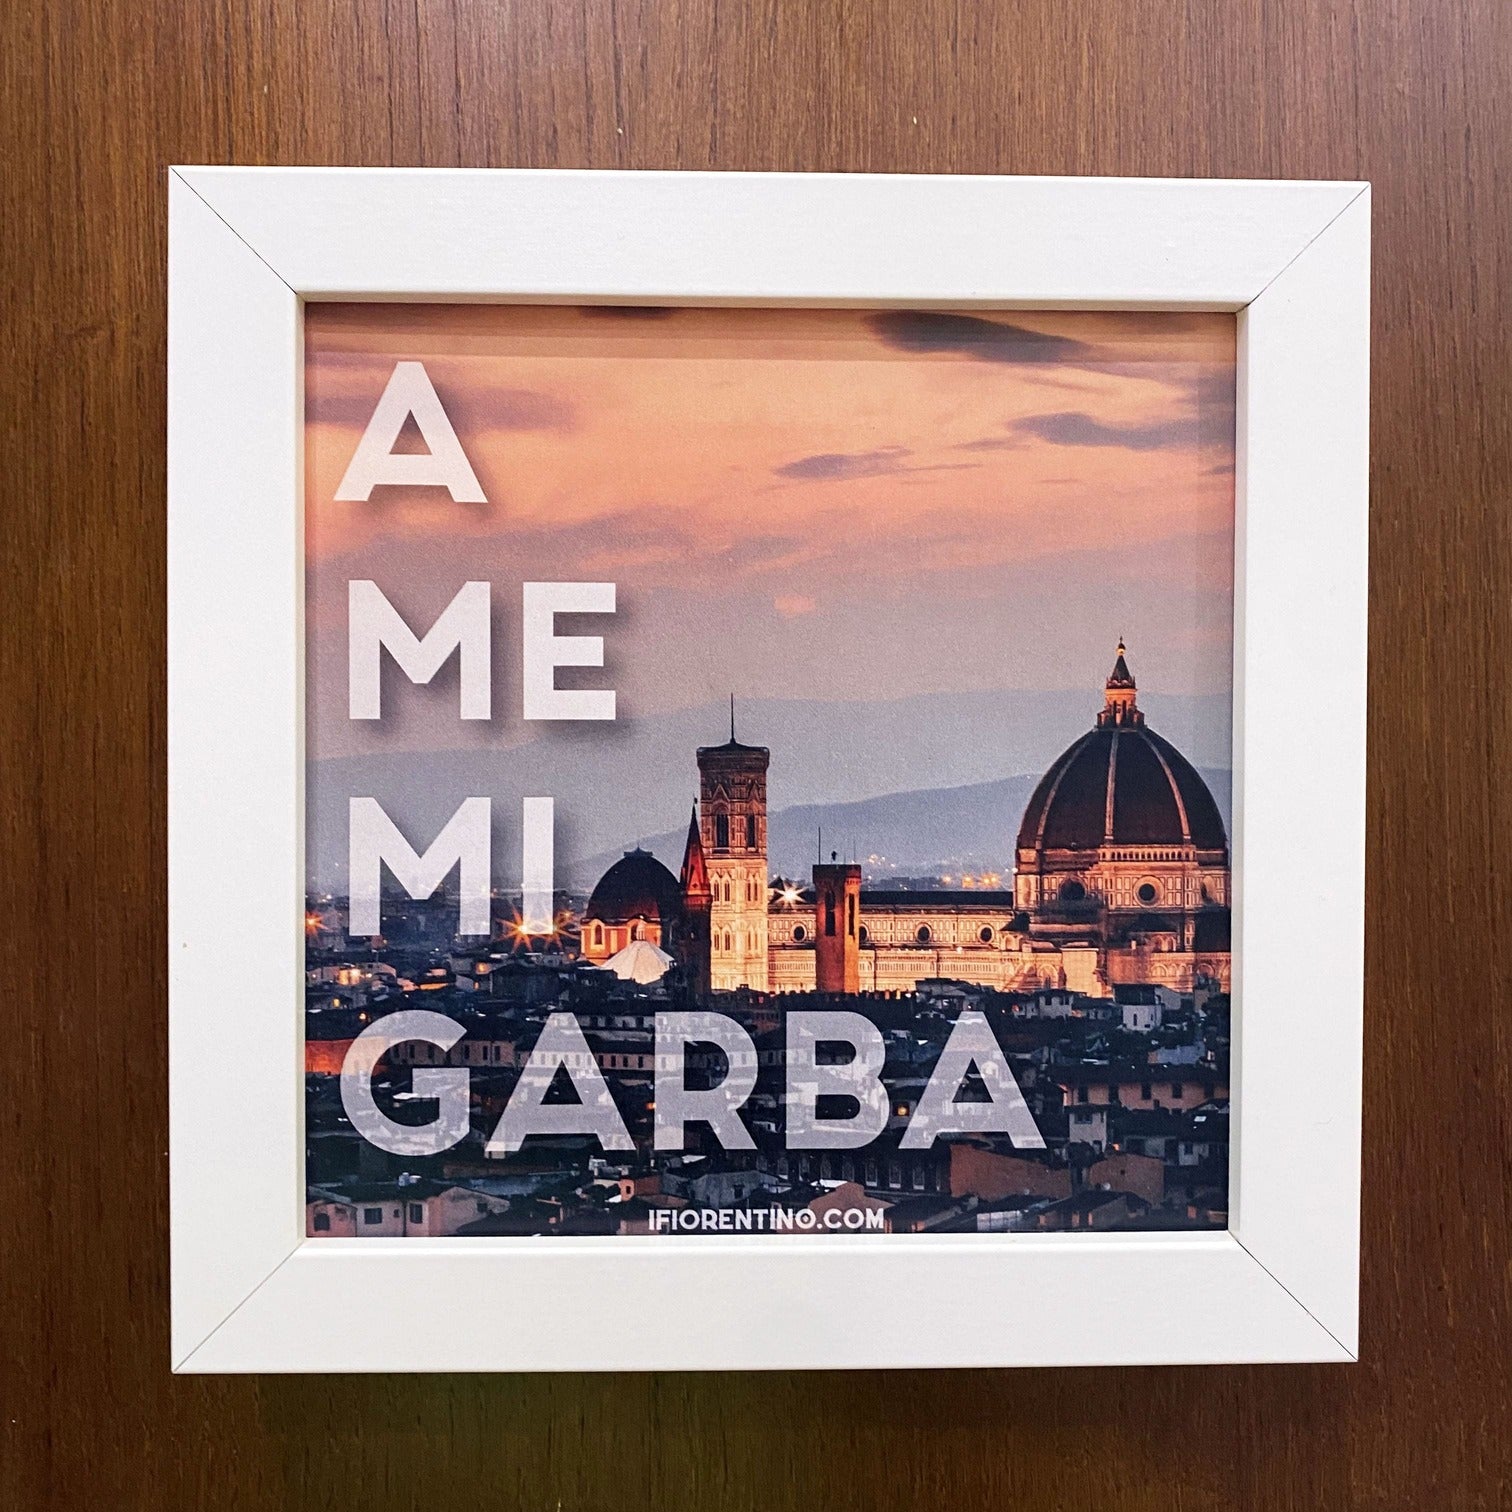 A ME MI GARBA STAMPA + CORNICE - poster fiorentini - poster firenze - regalo fiorentino - fiorentino  - foppeddittelo